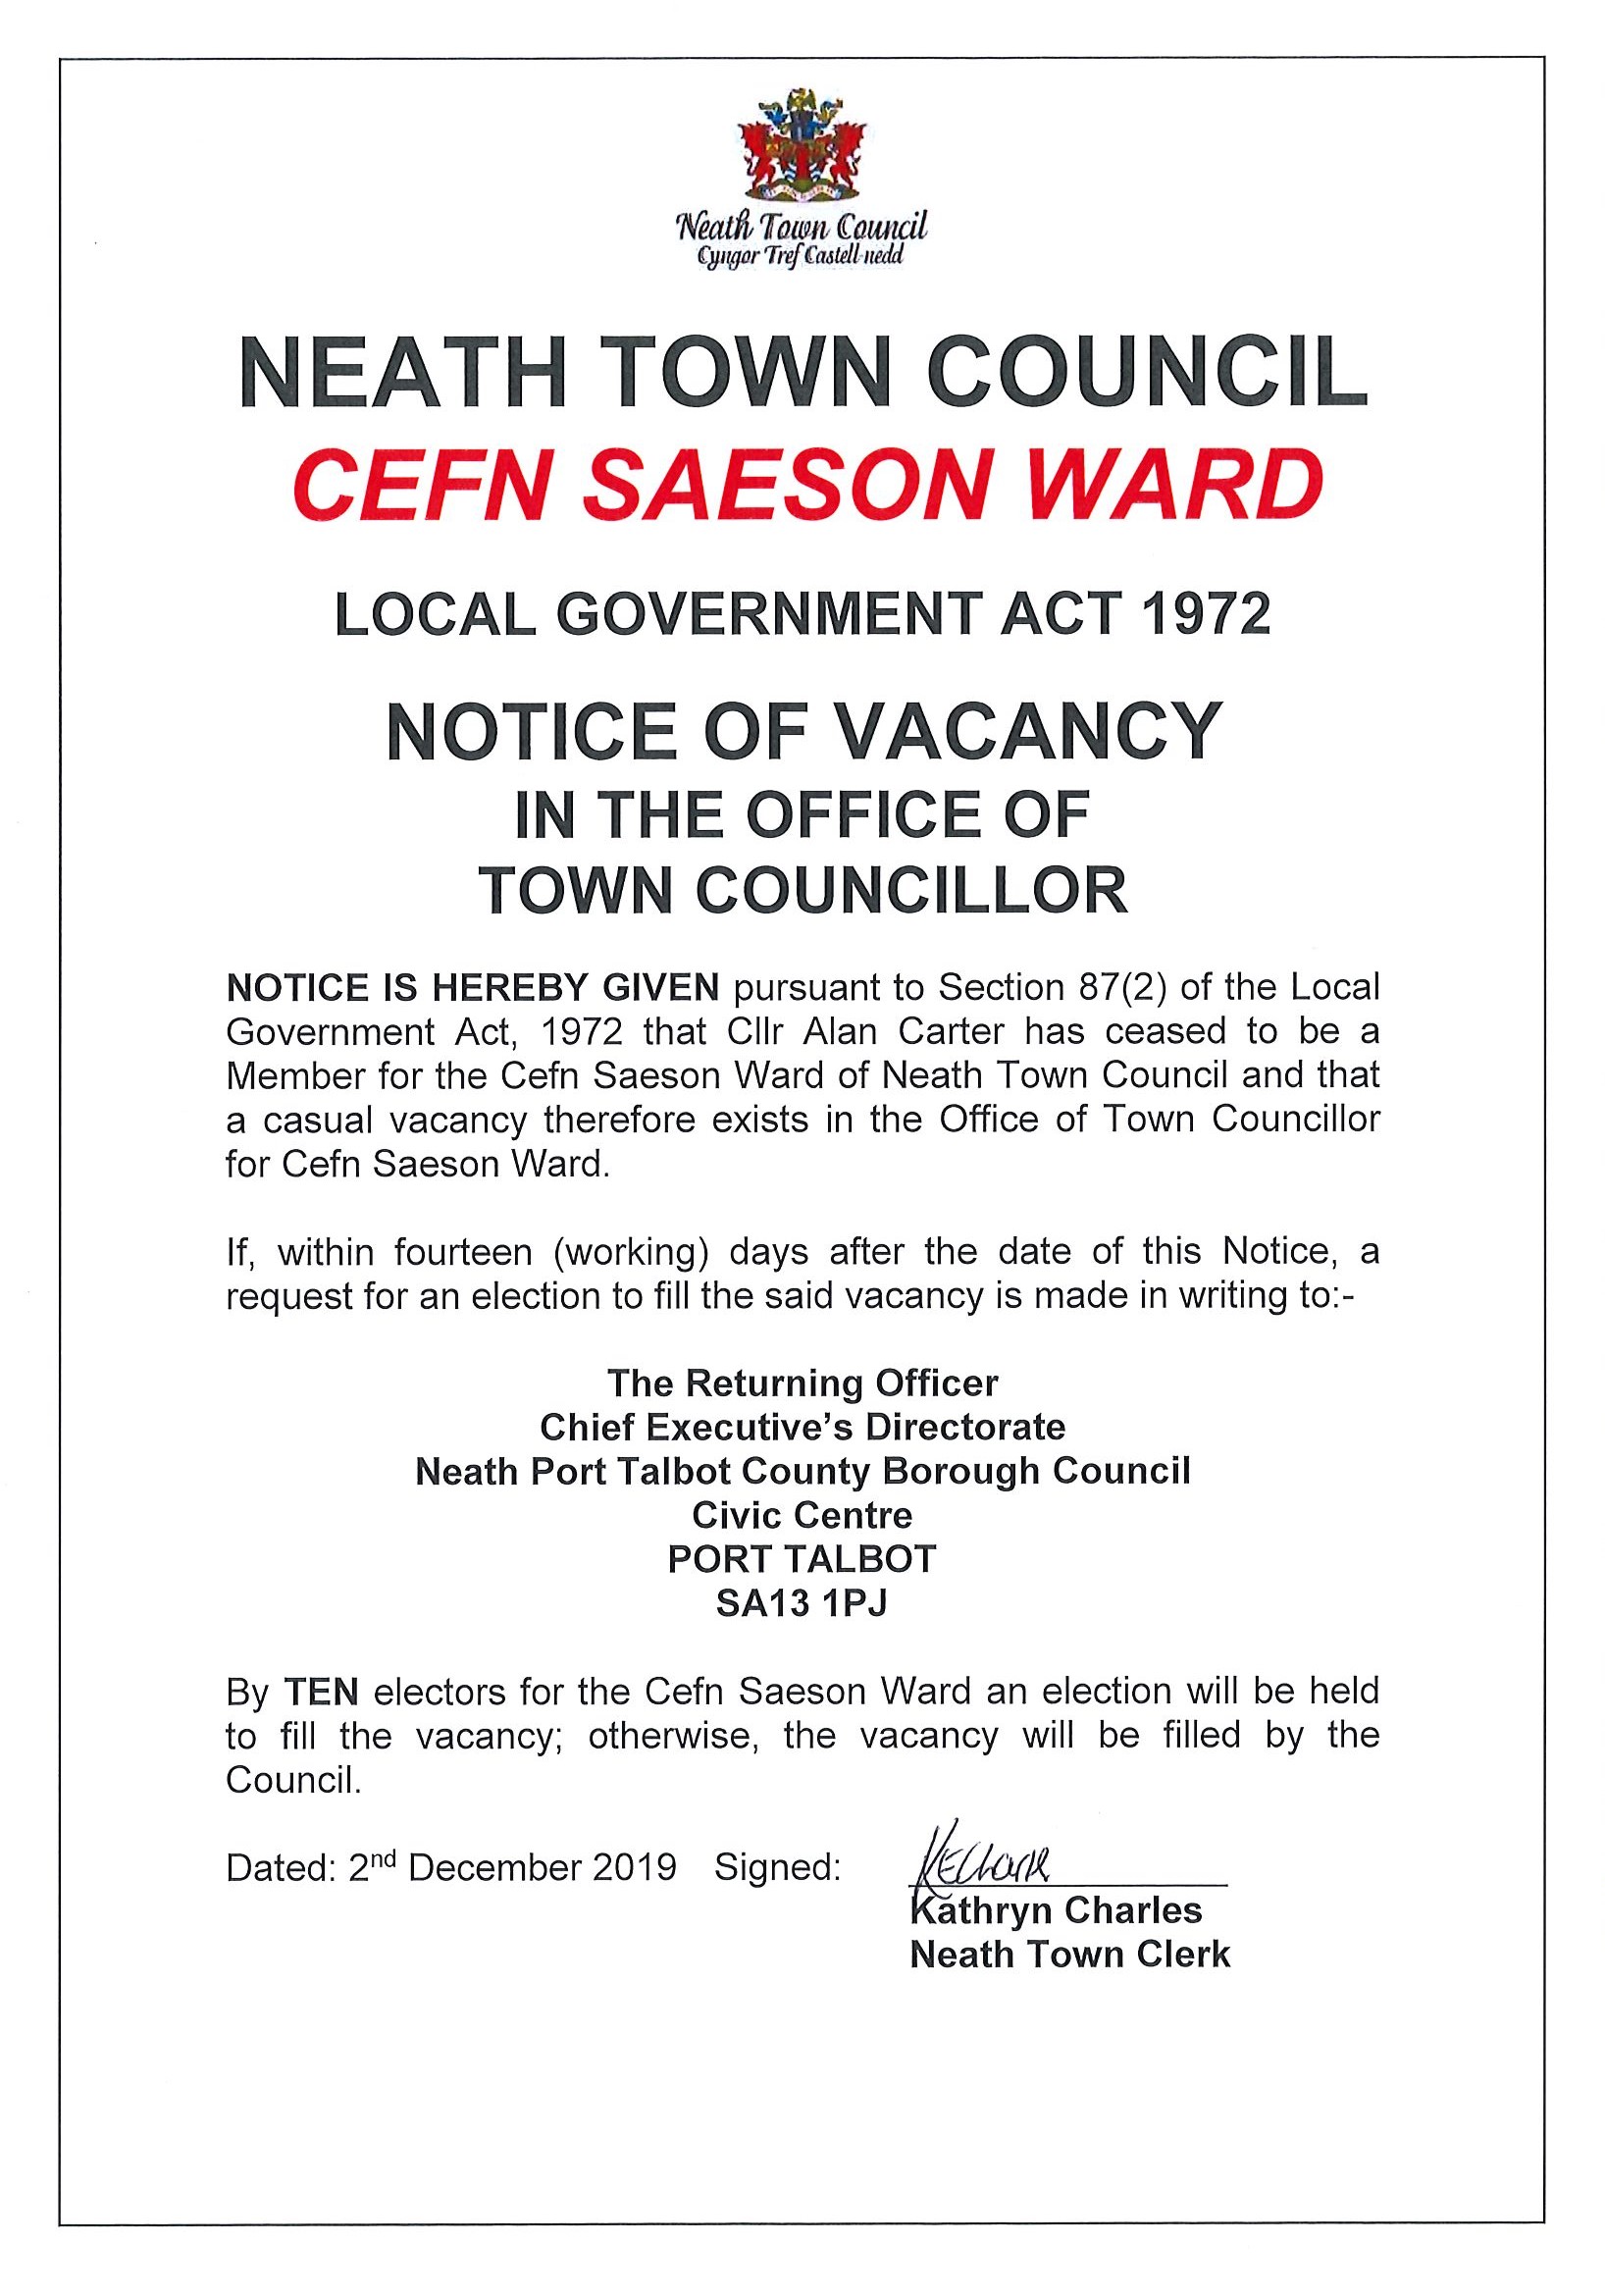 Notice of Vacancy in Cefn Saeson Ward